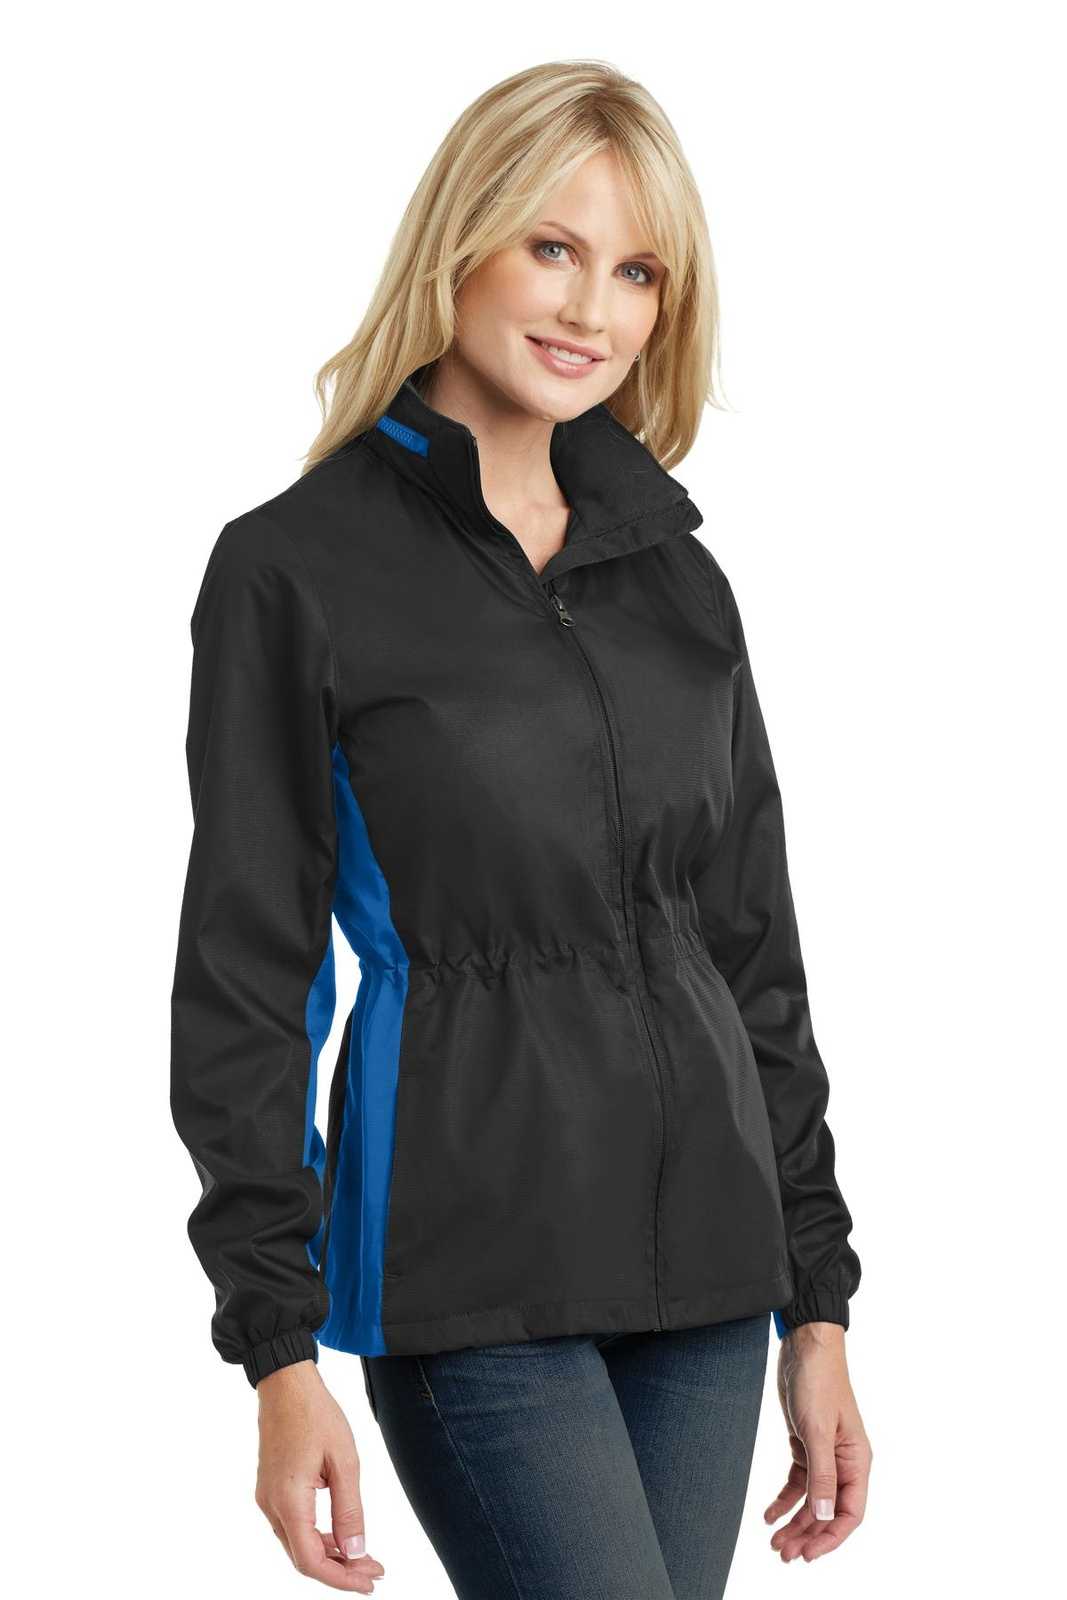 Port Authority L330 Ladies Core Colorblock Wind Jacket - Black Imperial Blue - HIT a Double - 4